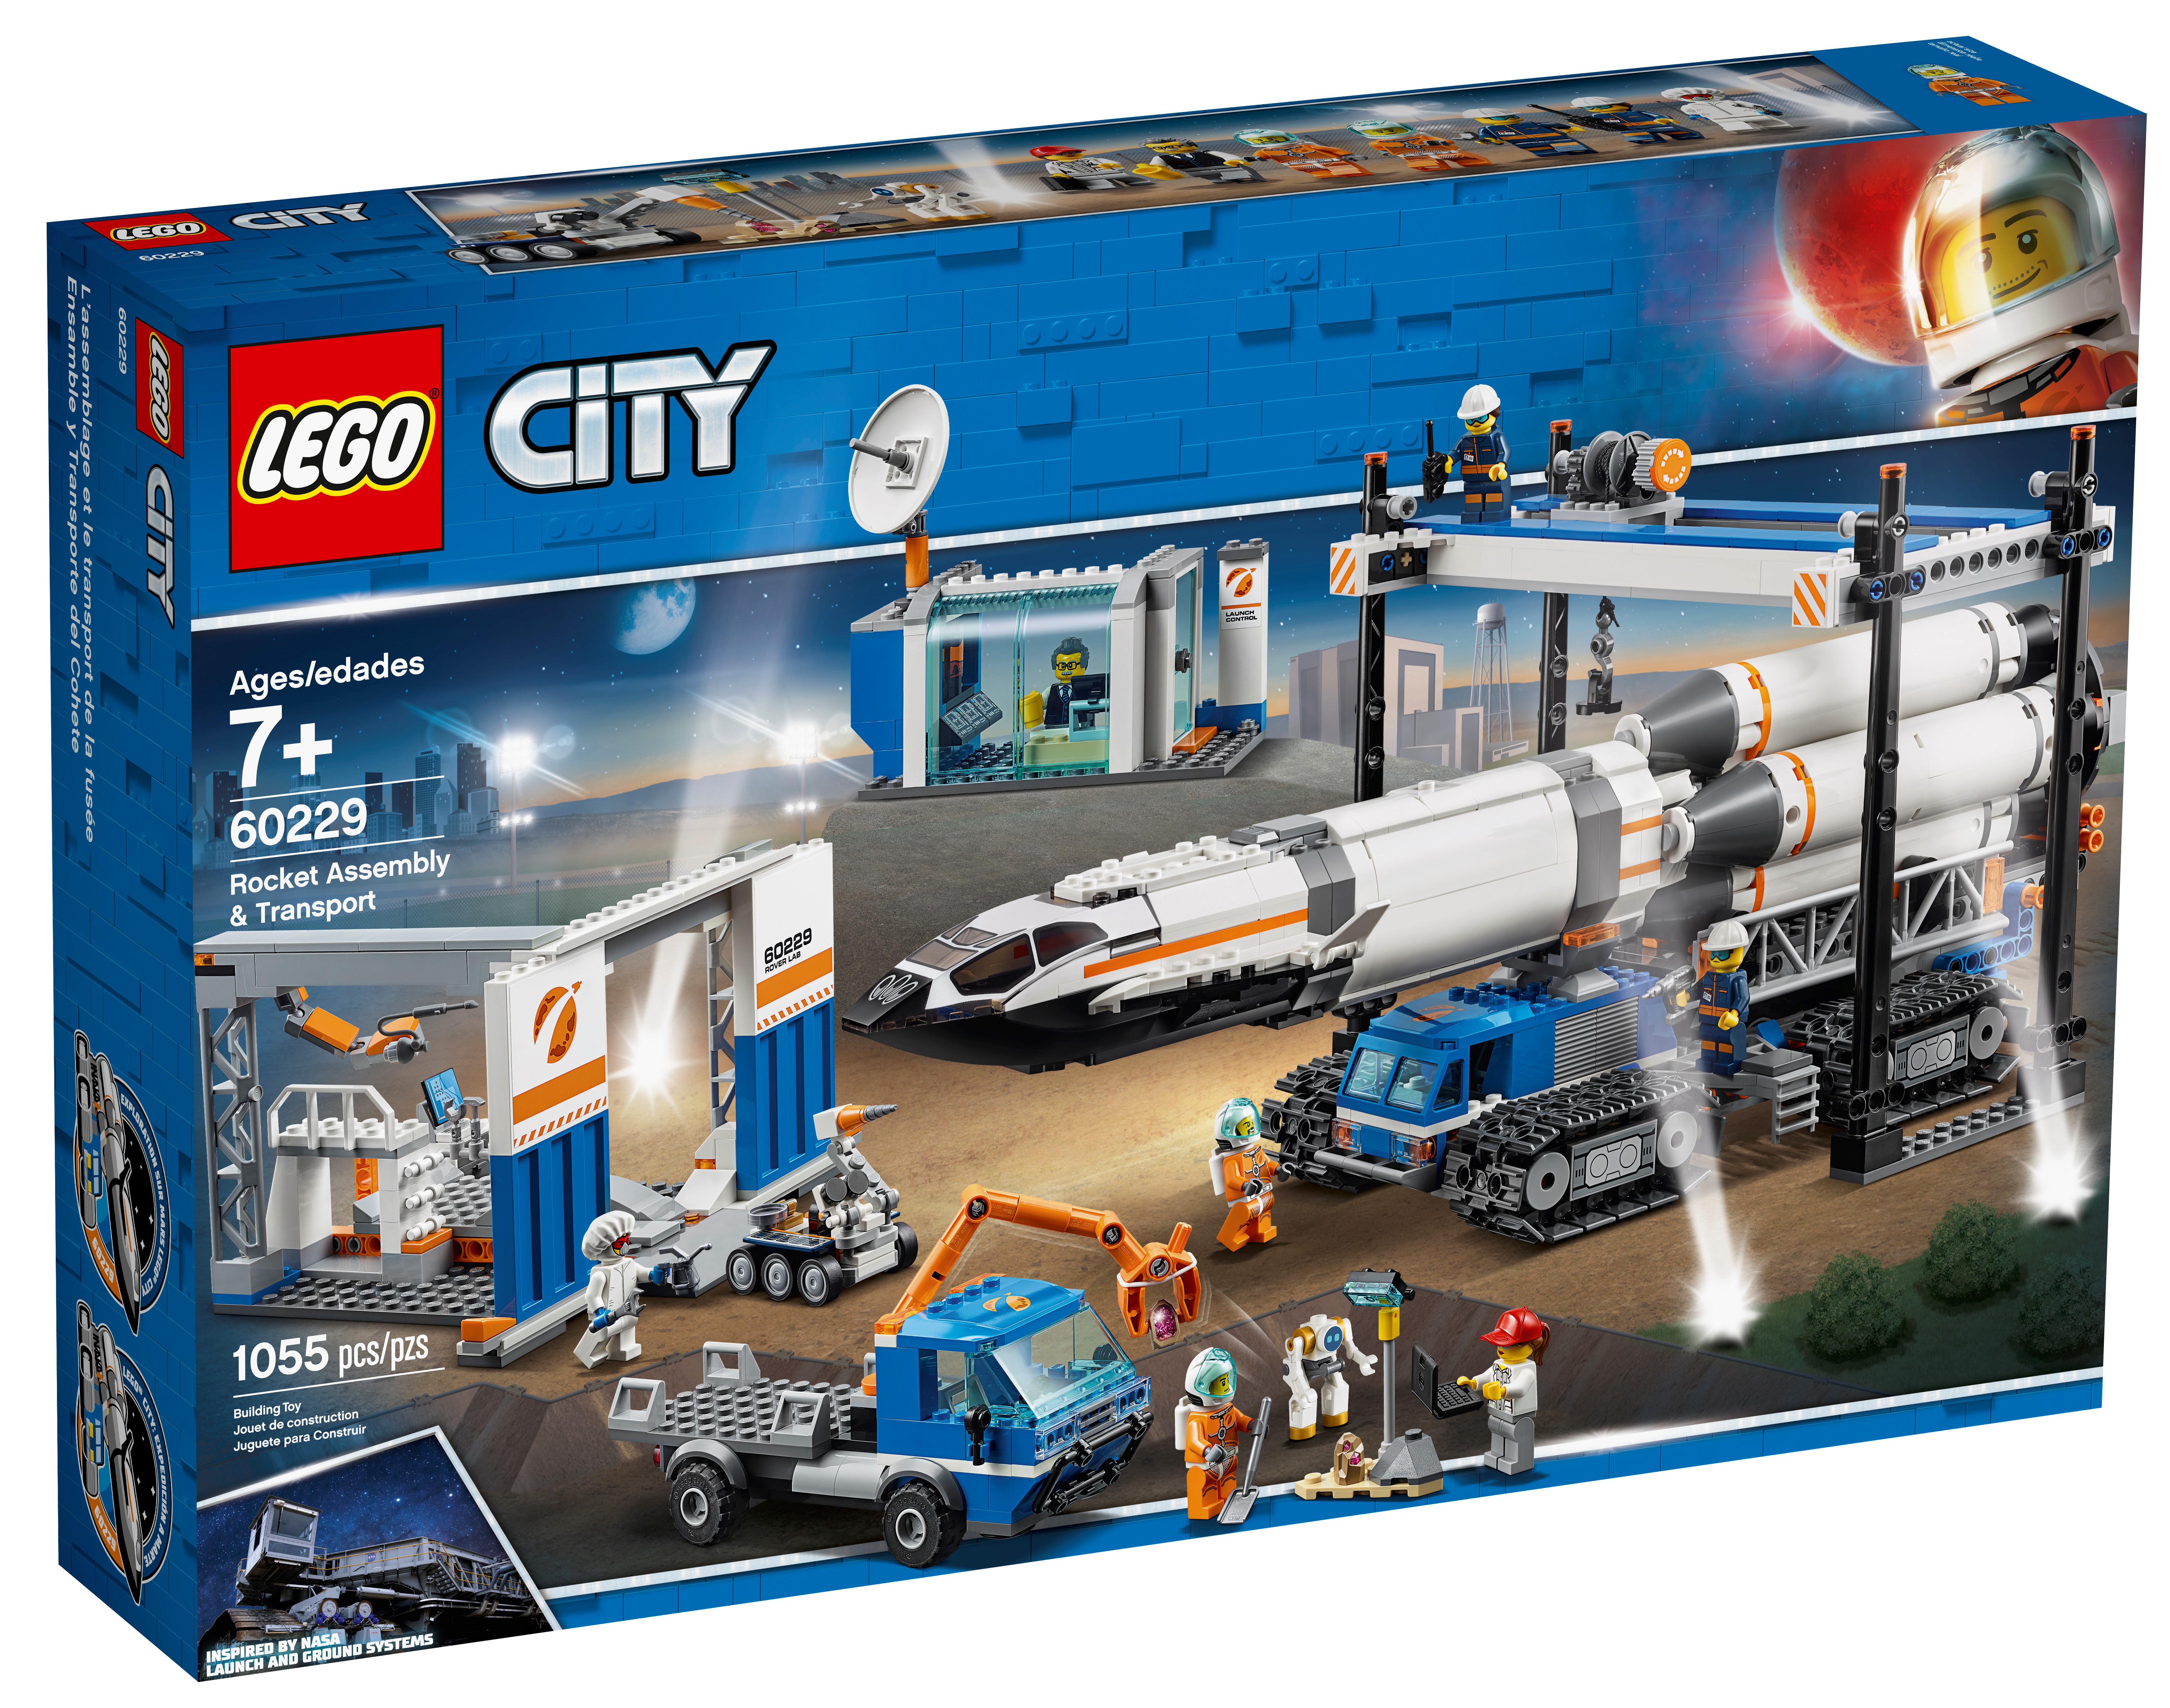 cool lego city sets